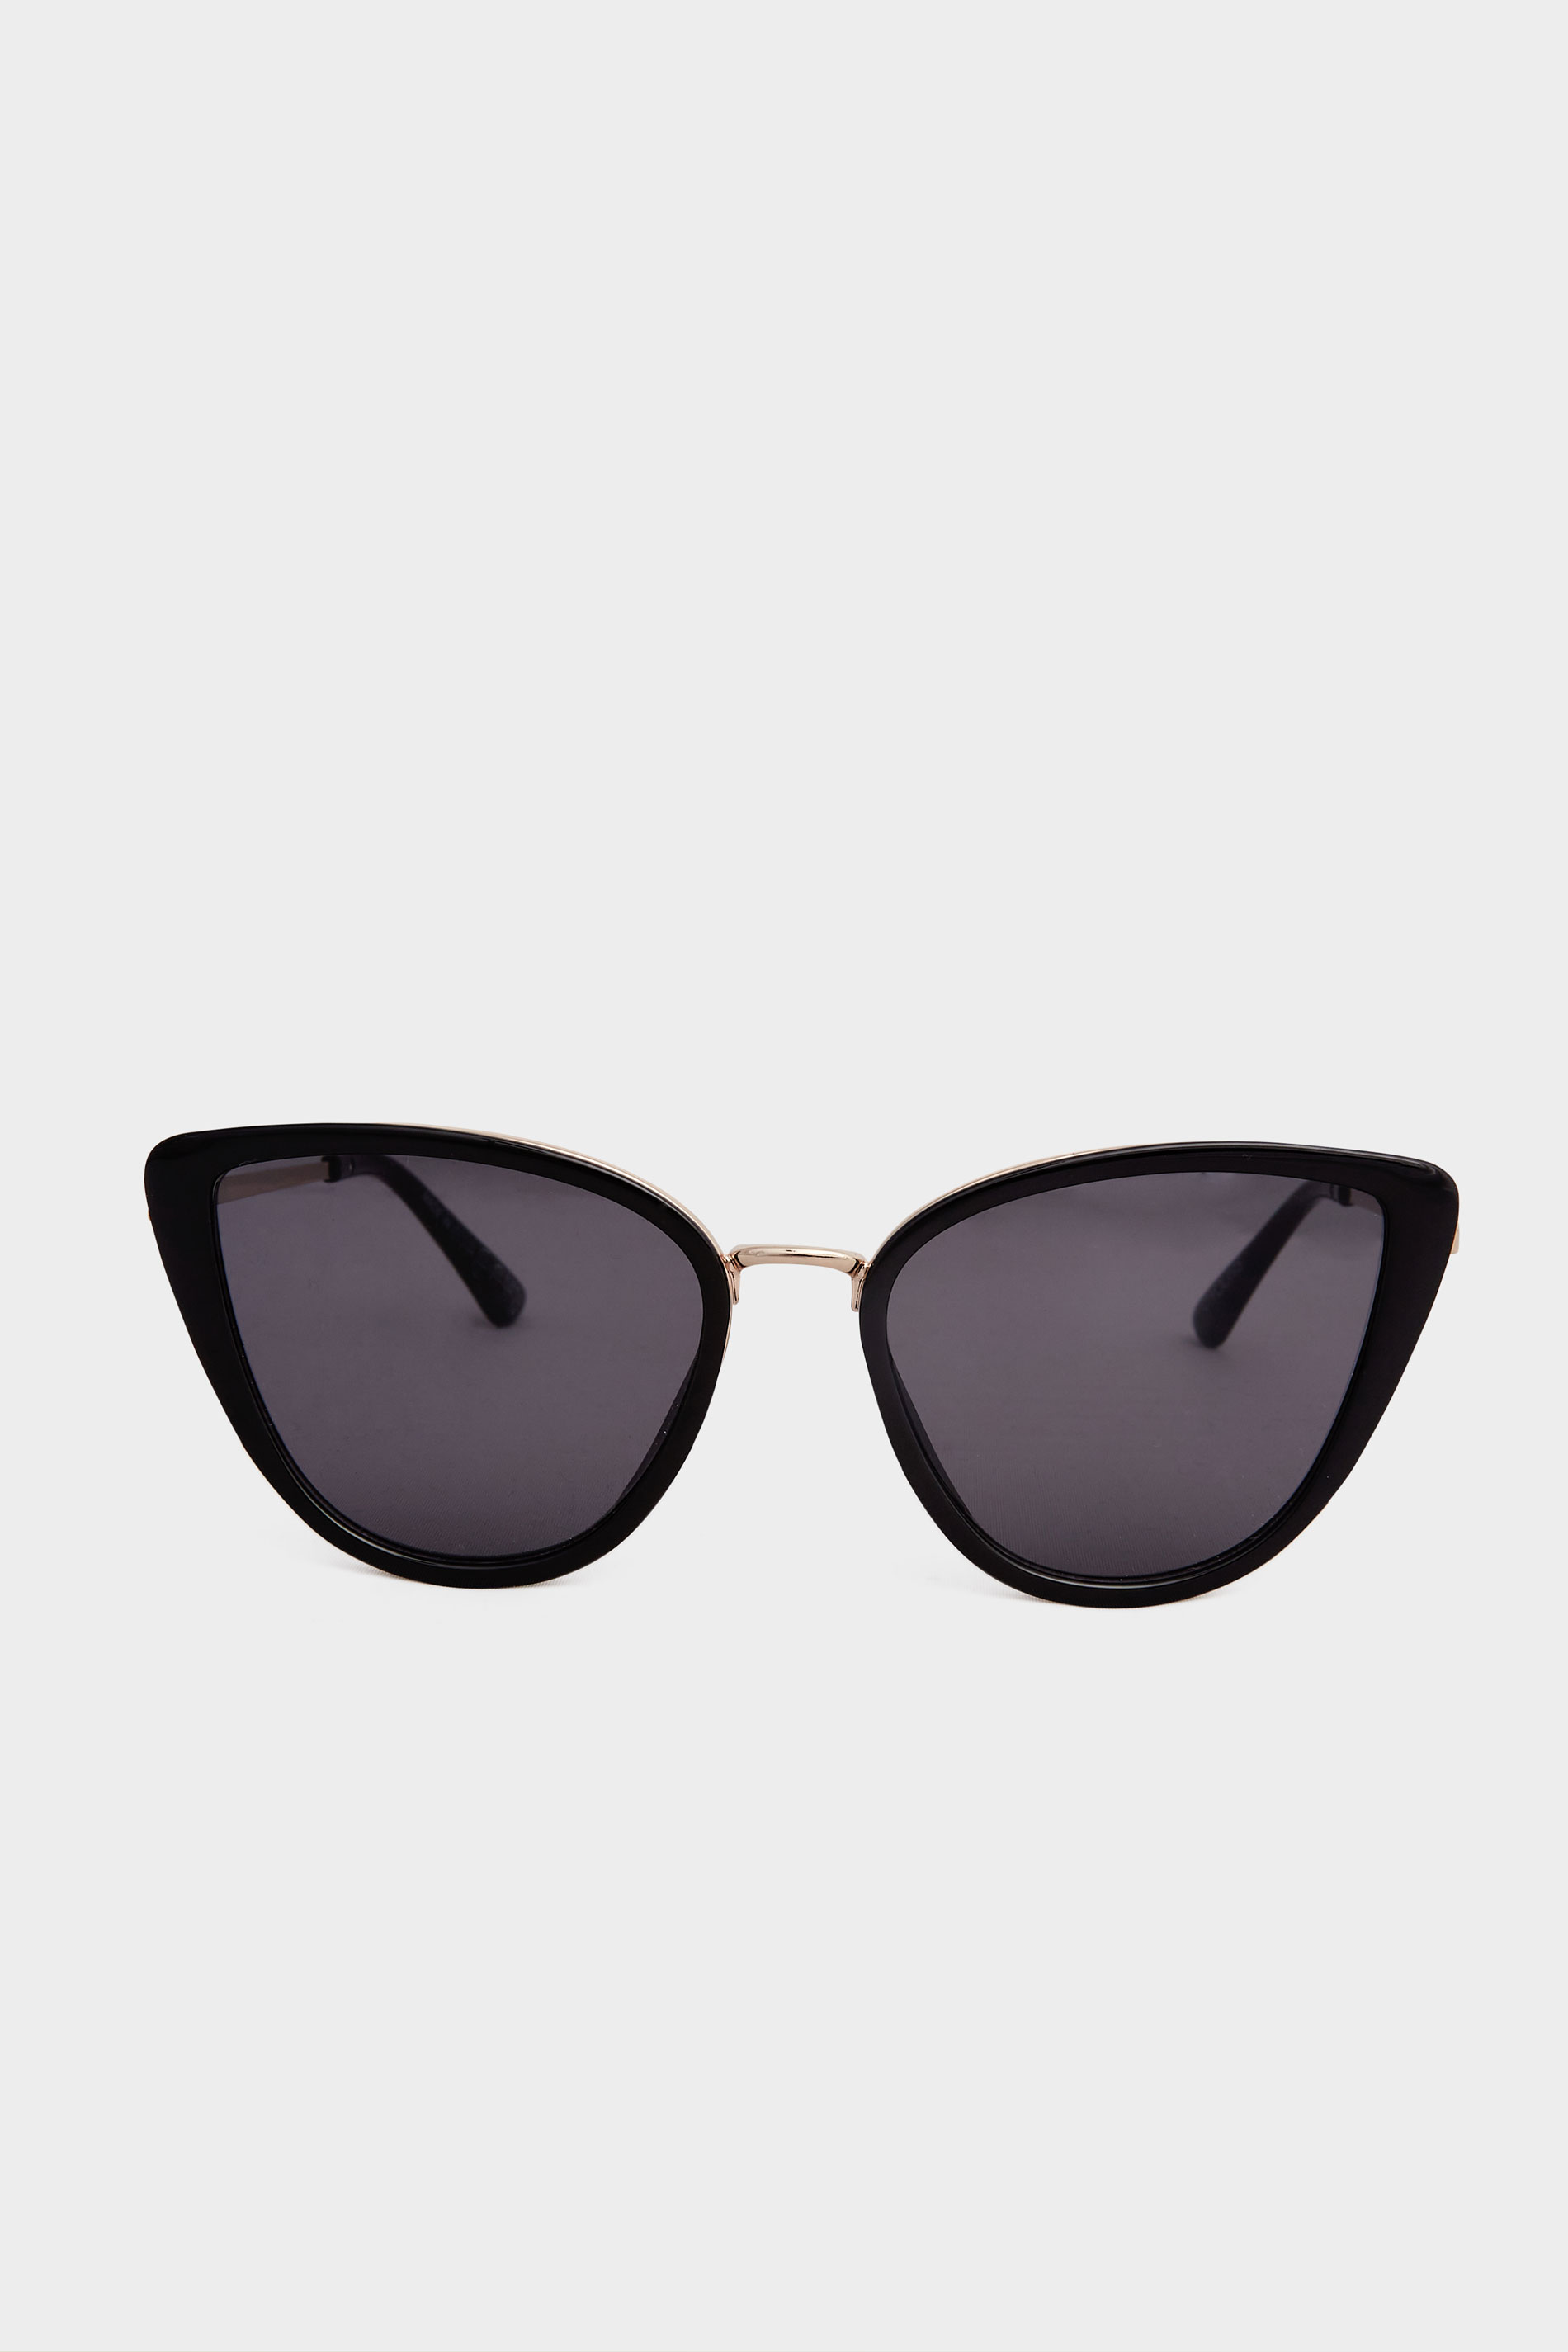 Plus Size Black & Gold Oversized Cat Eye Sunglasses | Yours Clothing 3